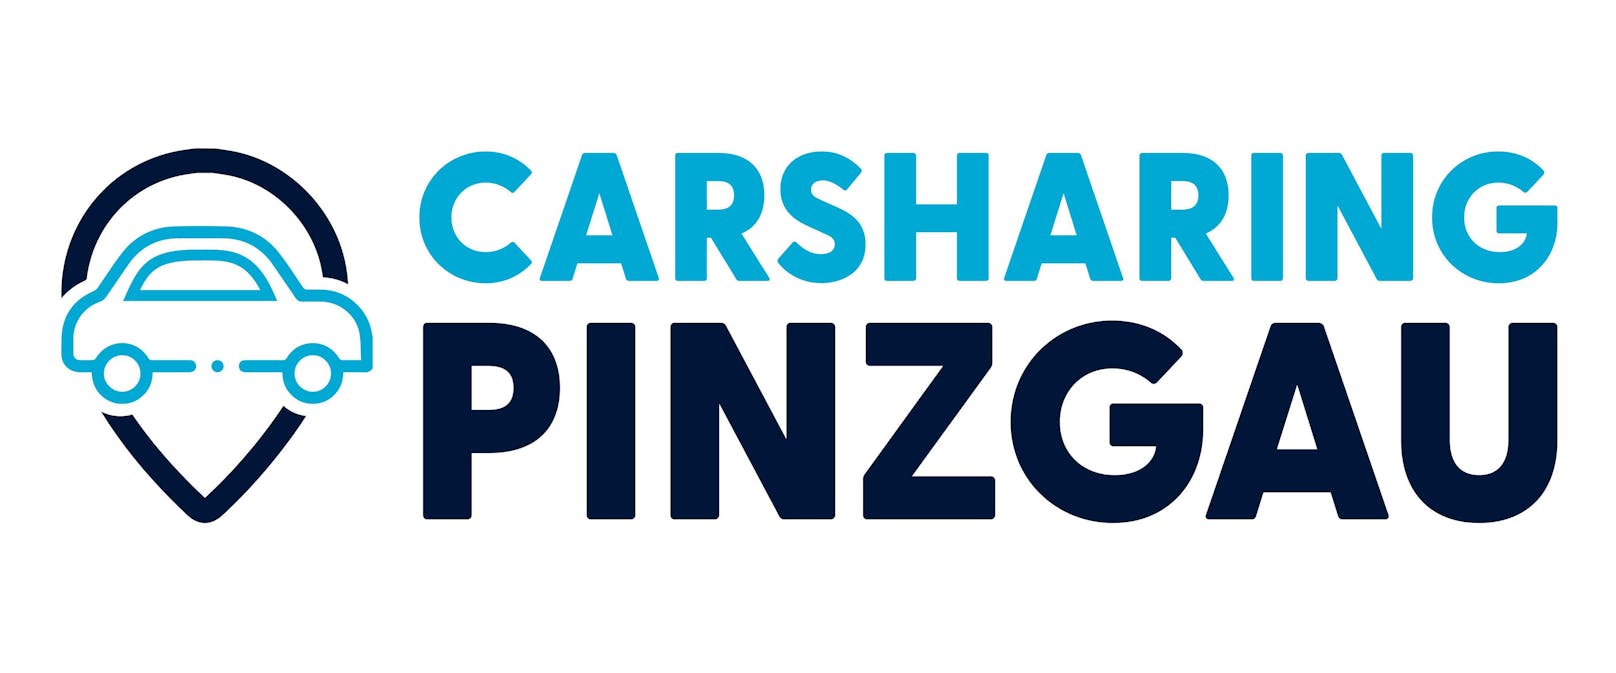 Carsharing Pinzgau Logo